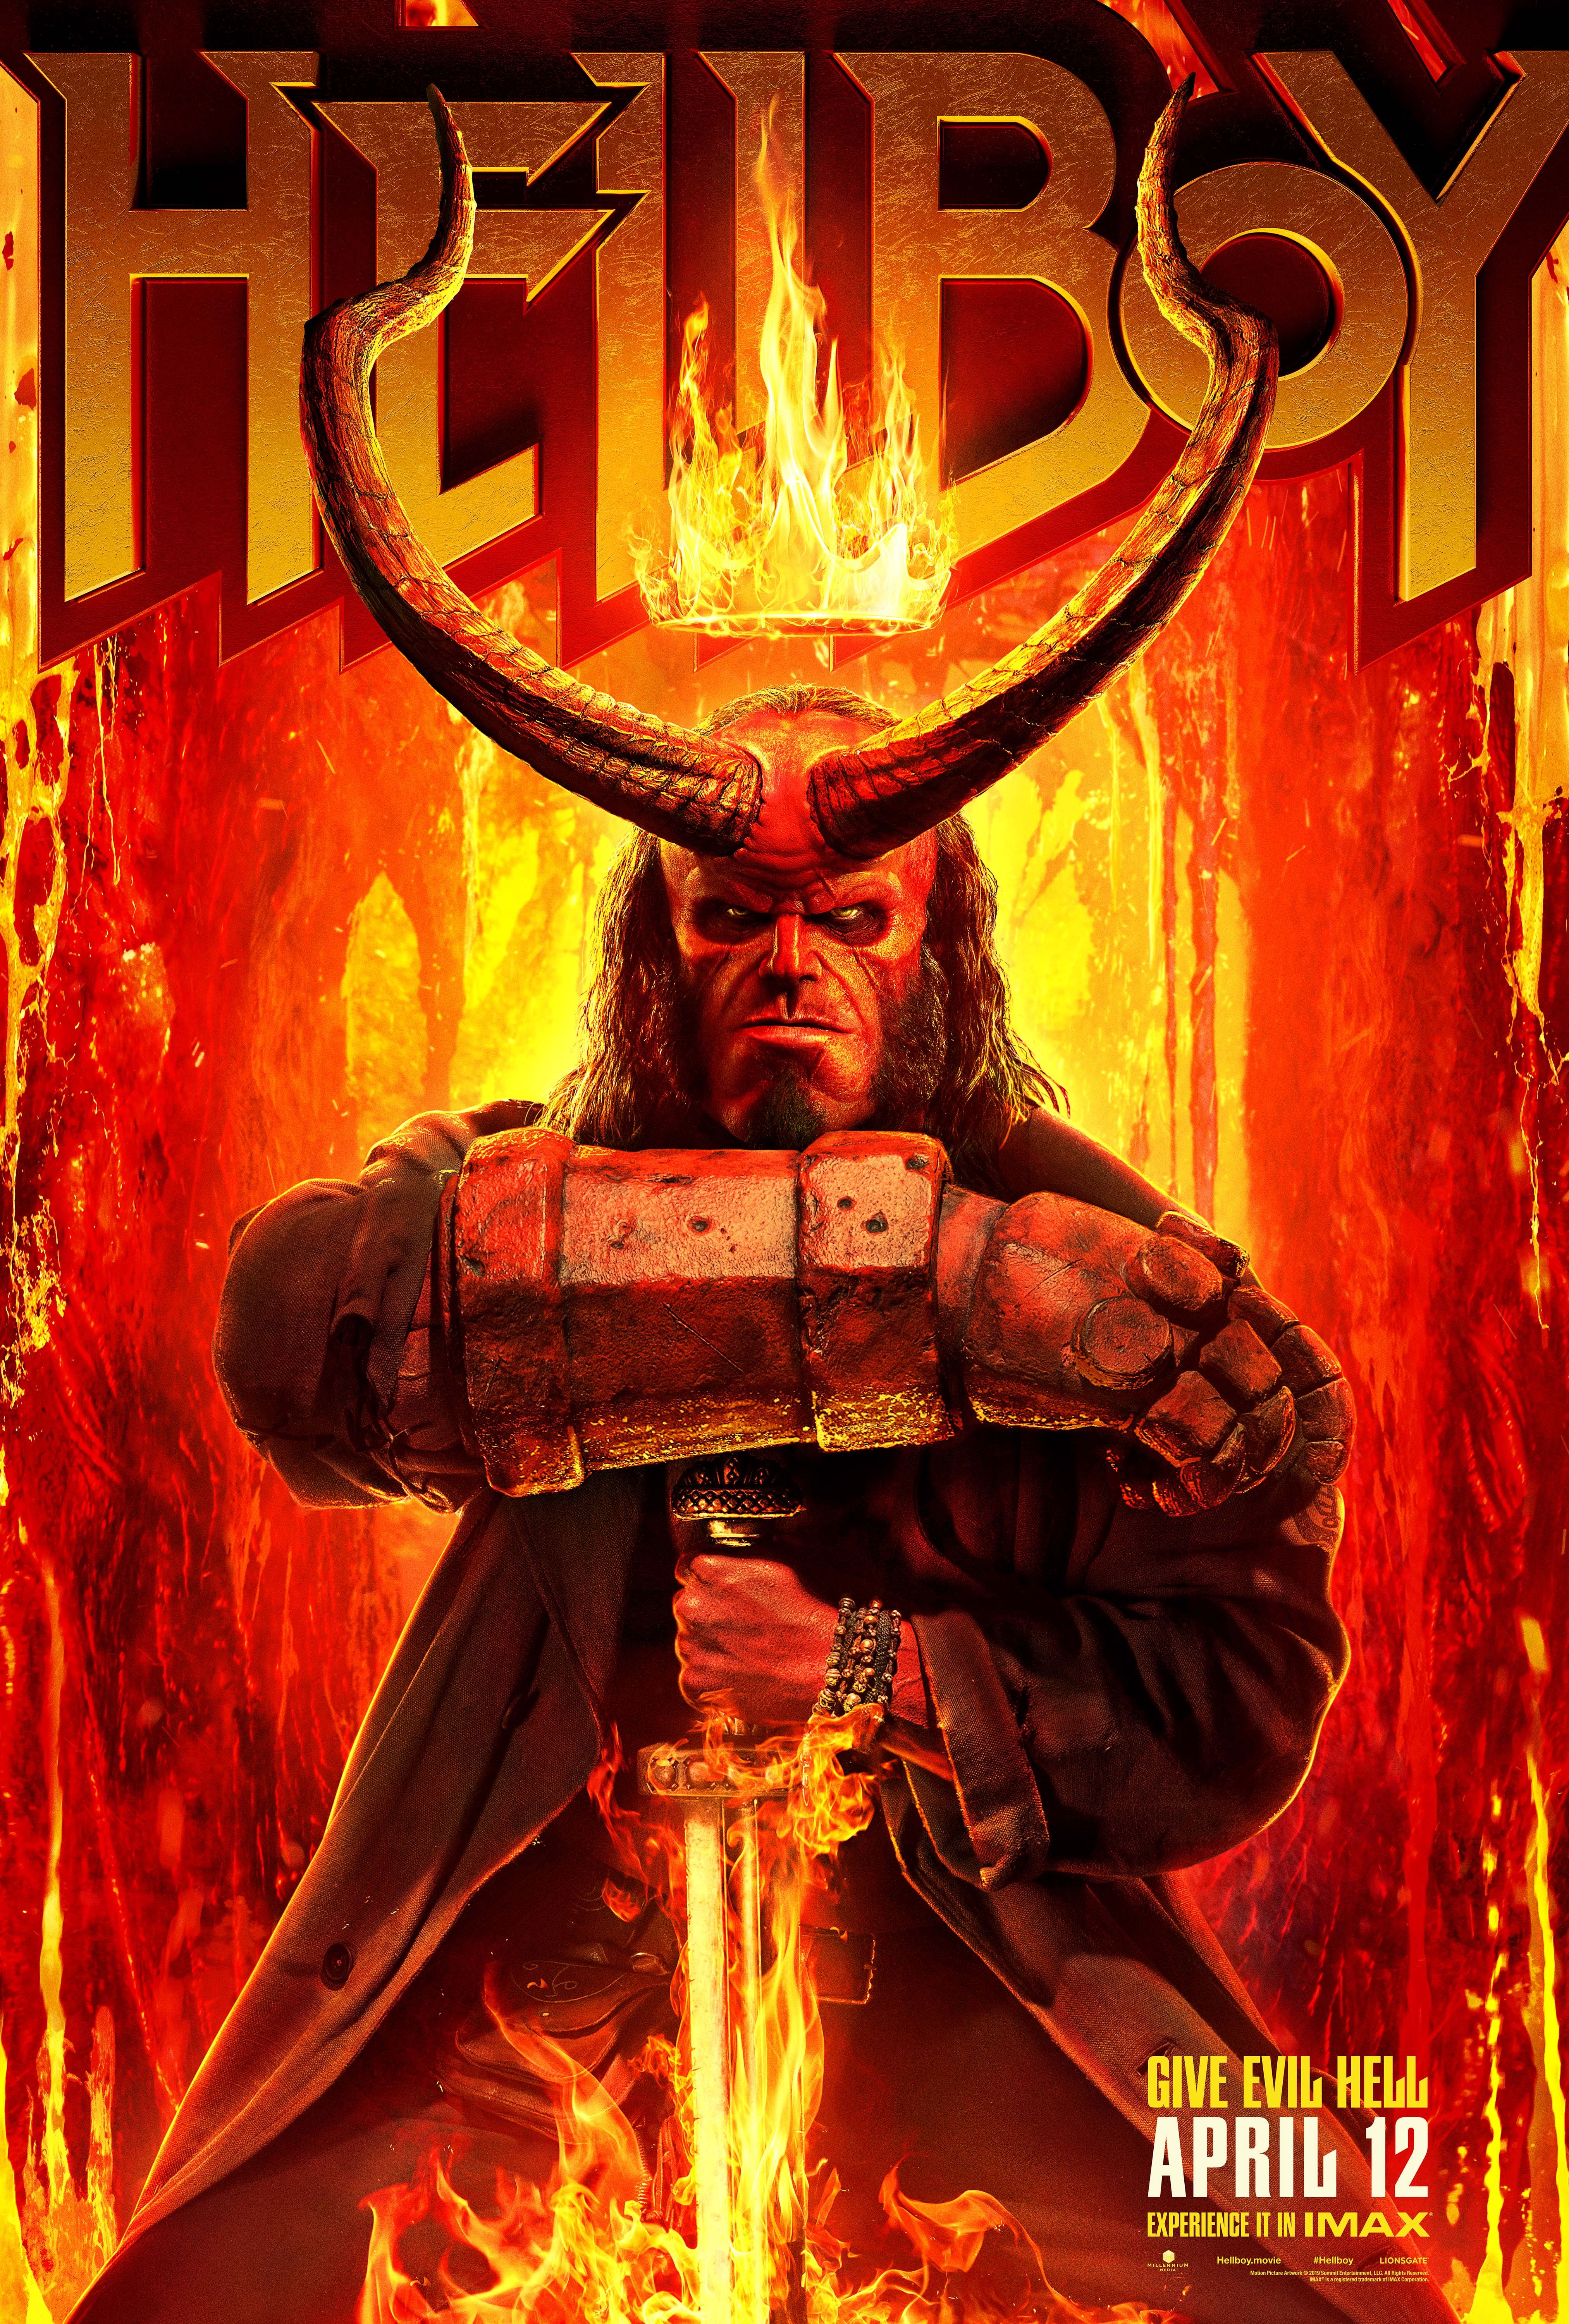 Hellboy (2019) Hindi Dubbed Full Movie